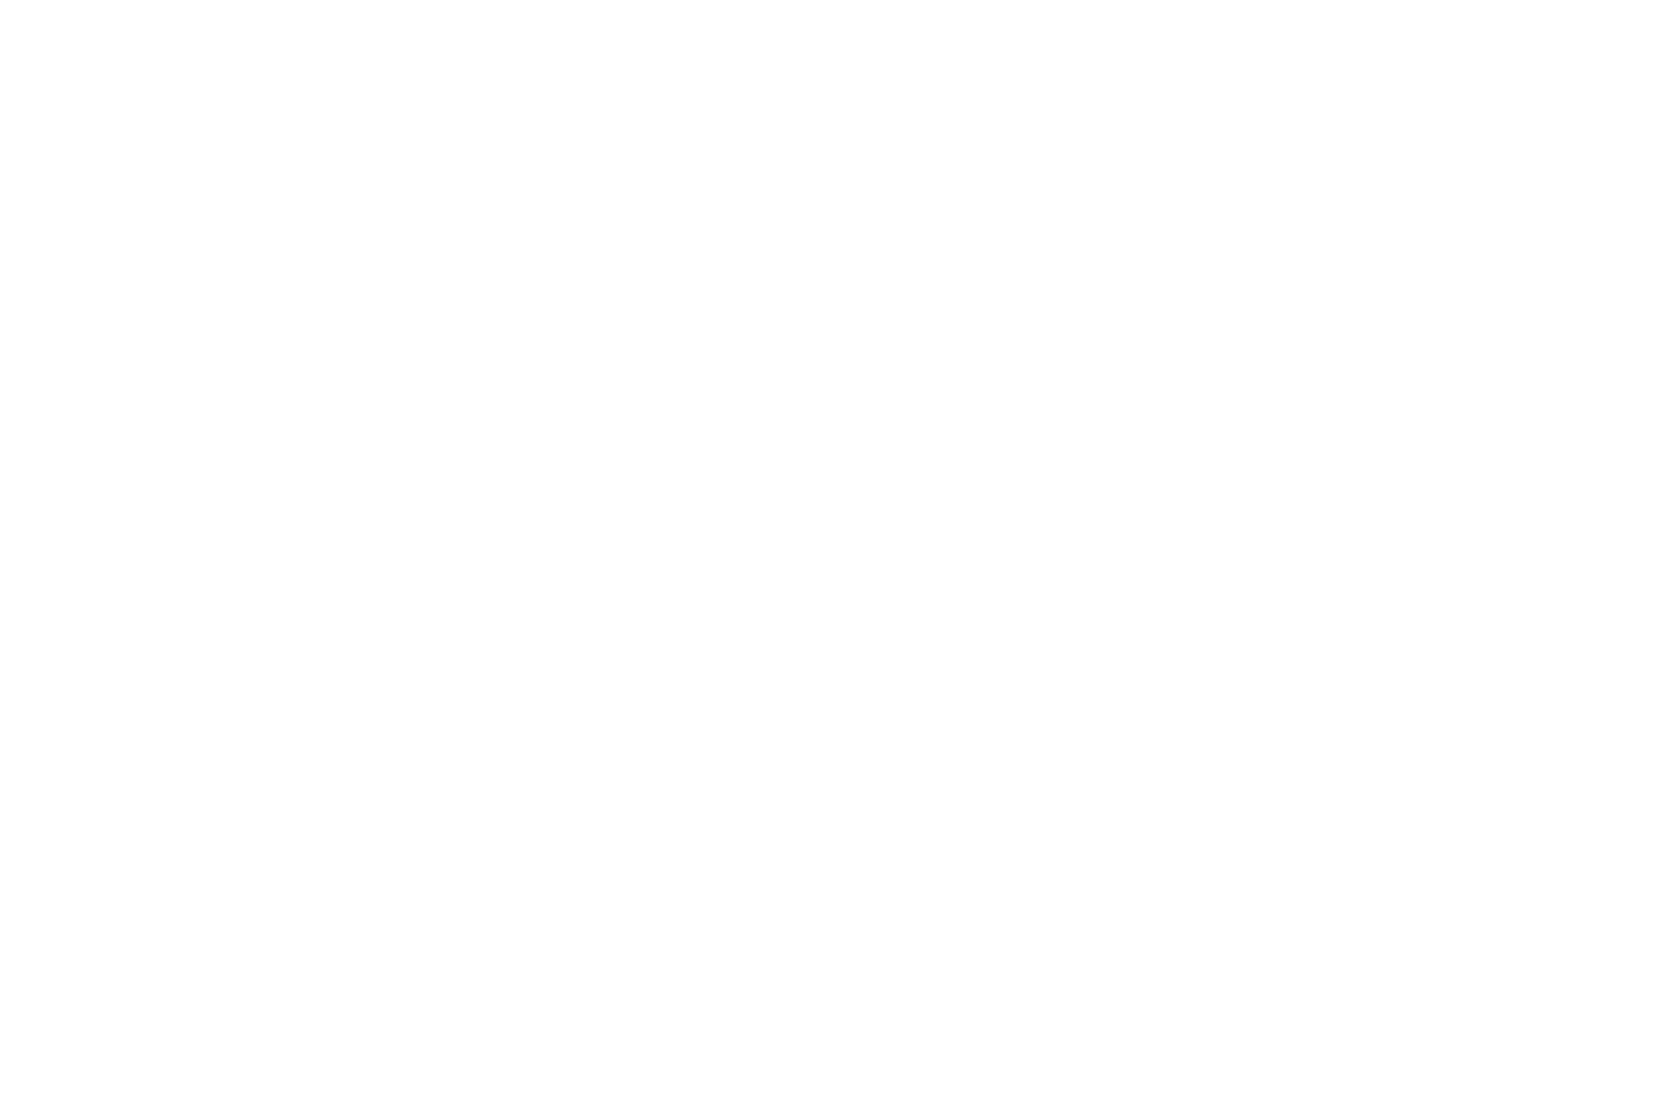 Пример логотипа, разработанного для креативного свадебного агенства для портфолио веб дизайнера